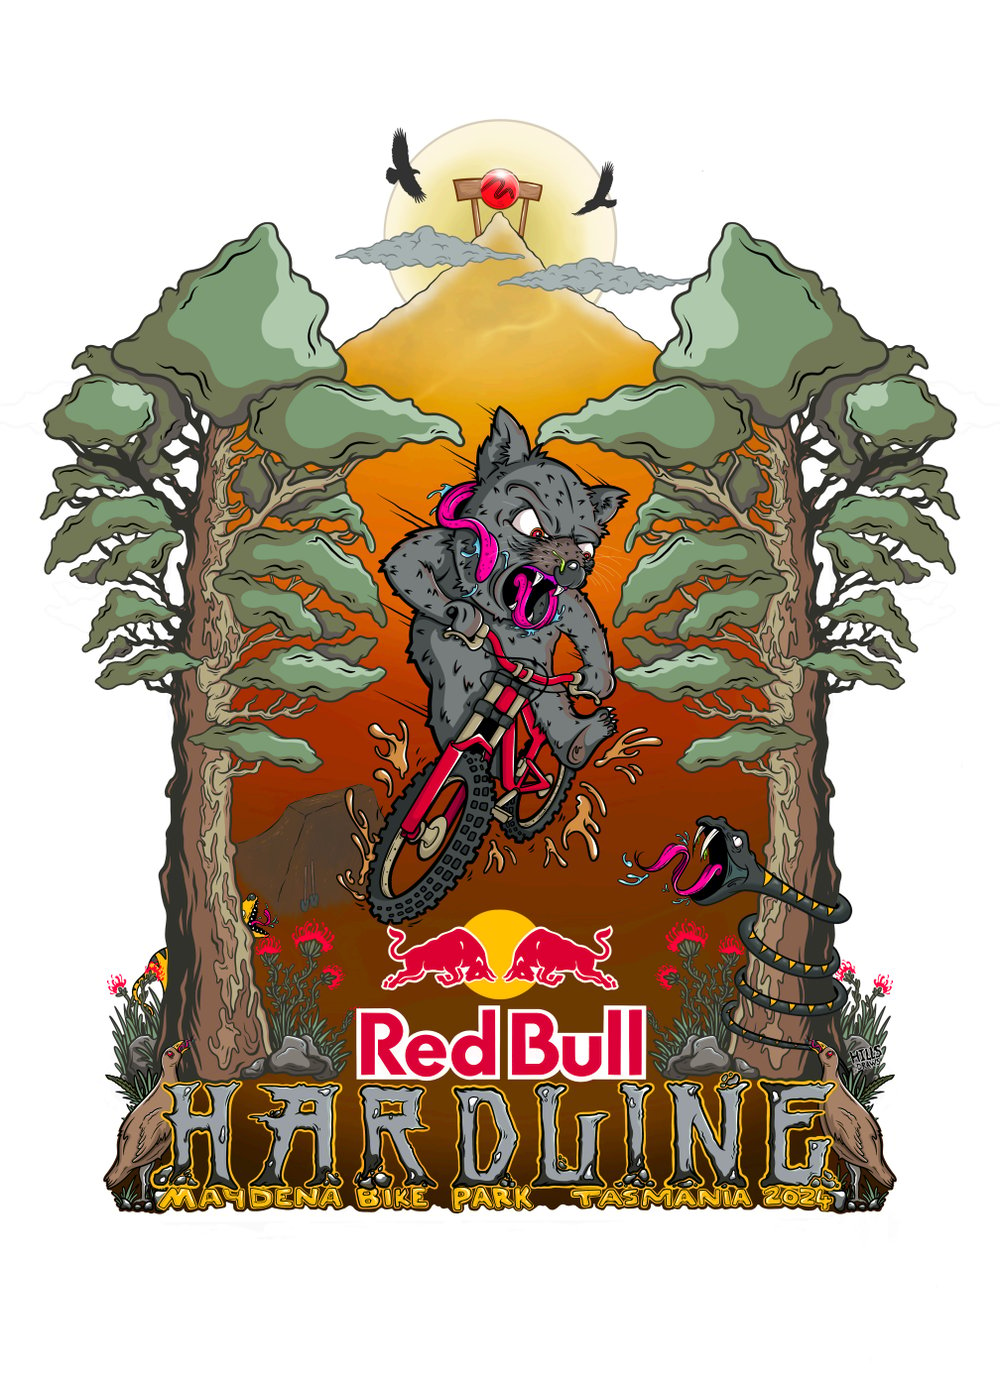 Red Bull Hardline official event print